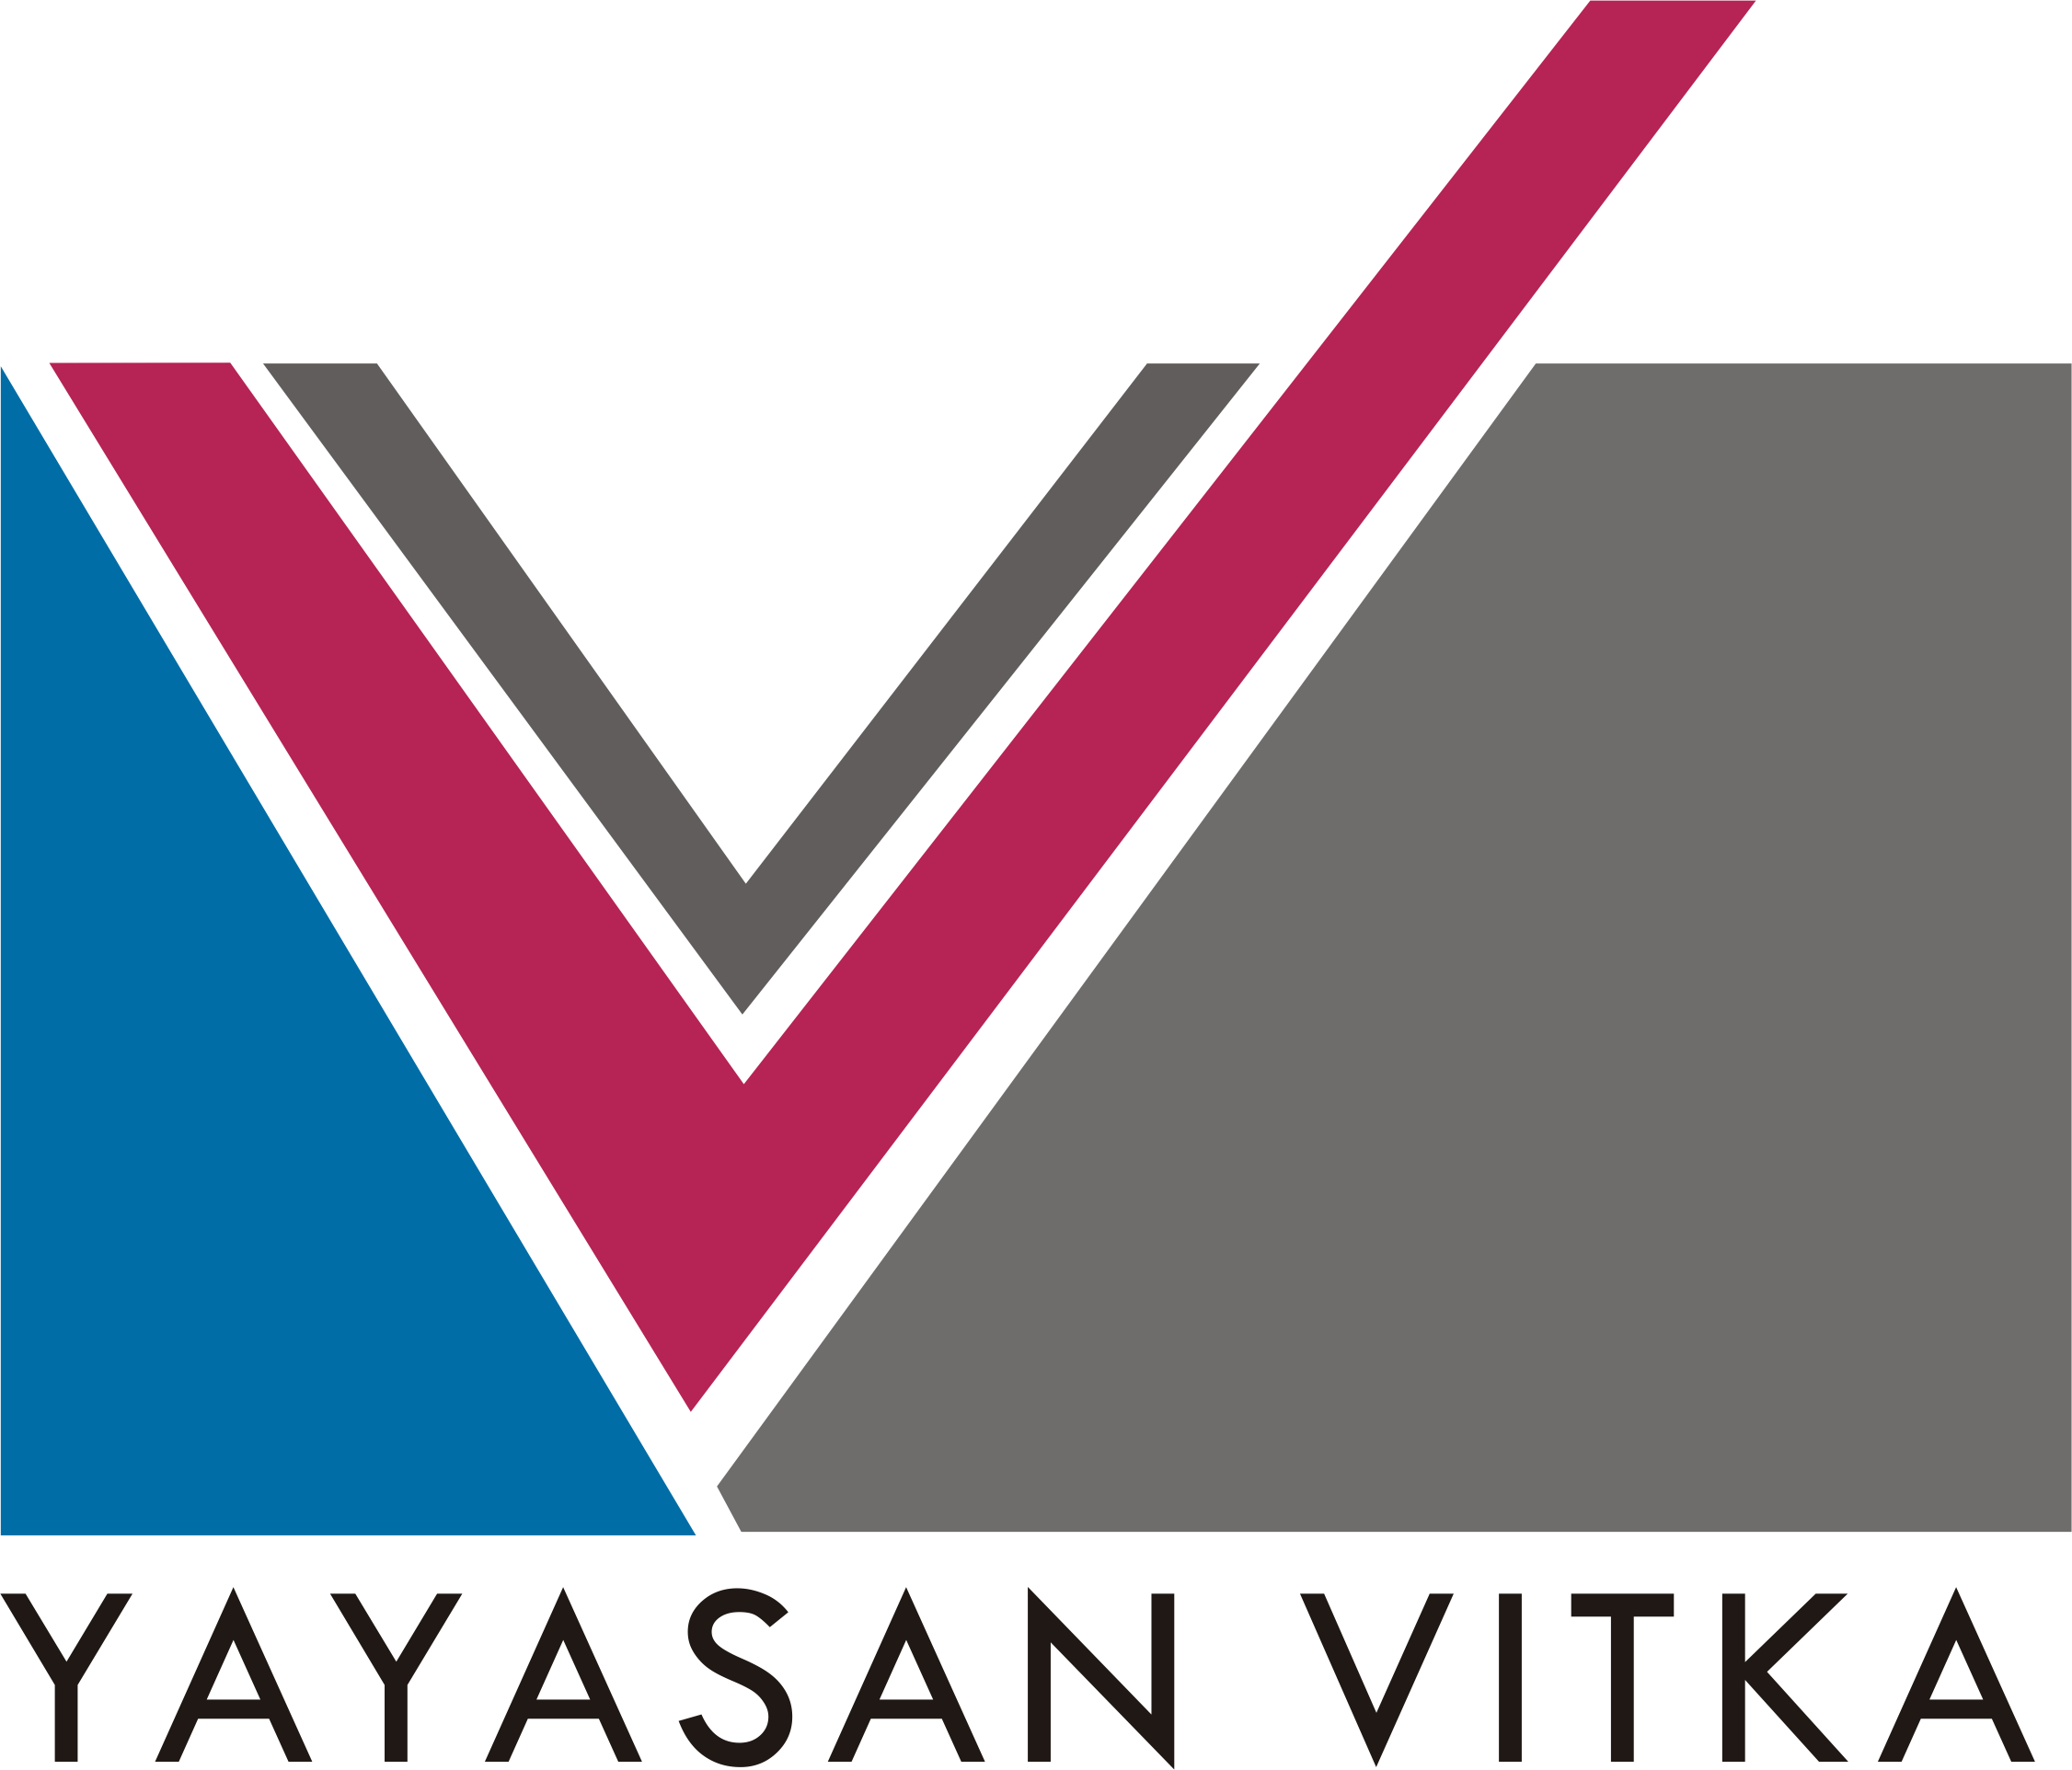 Yayasan Vitka